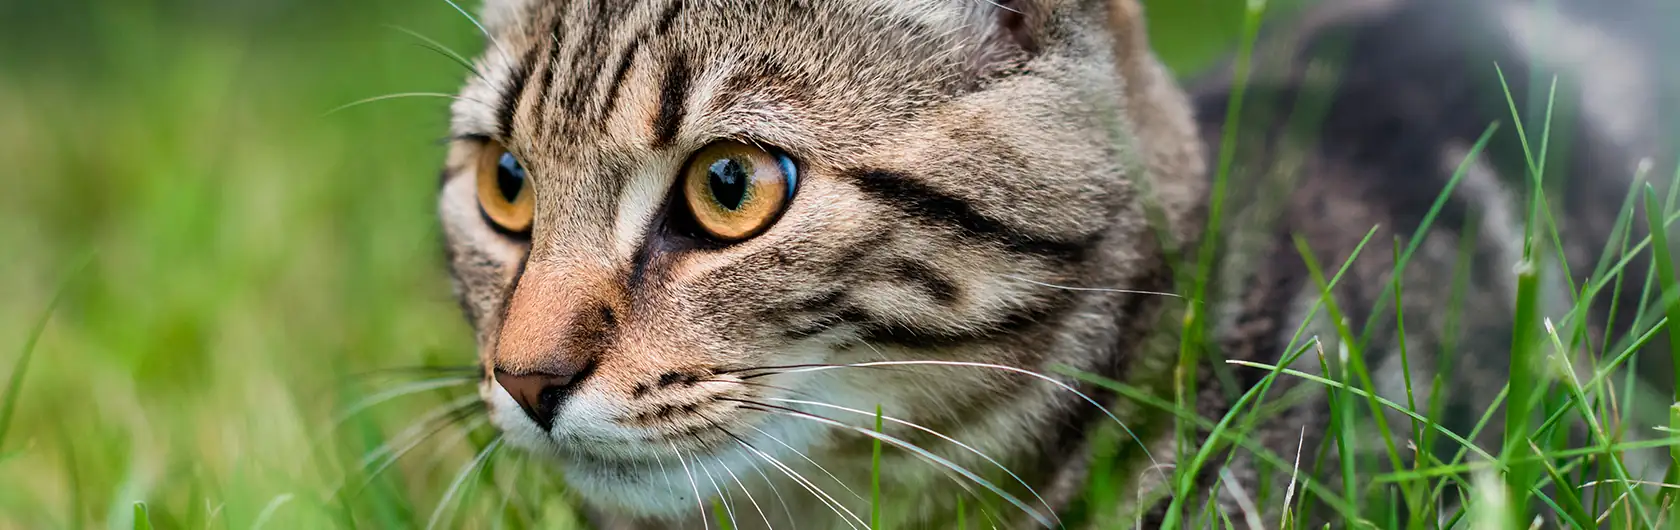 Cuidados Cruciales para Gatos en Verano y alimento para gatos de calidad nutribon